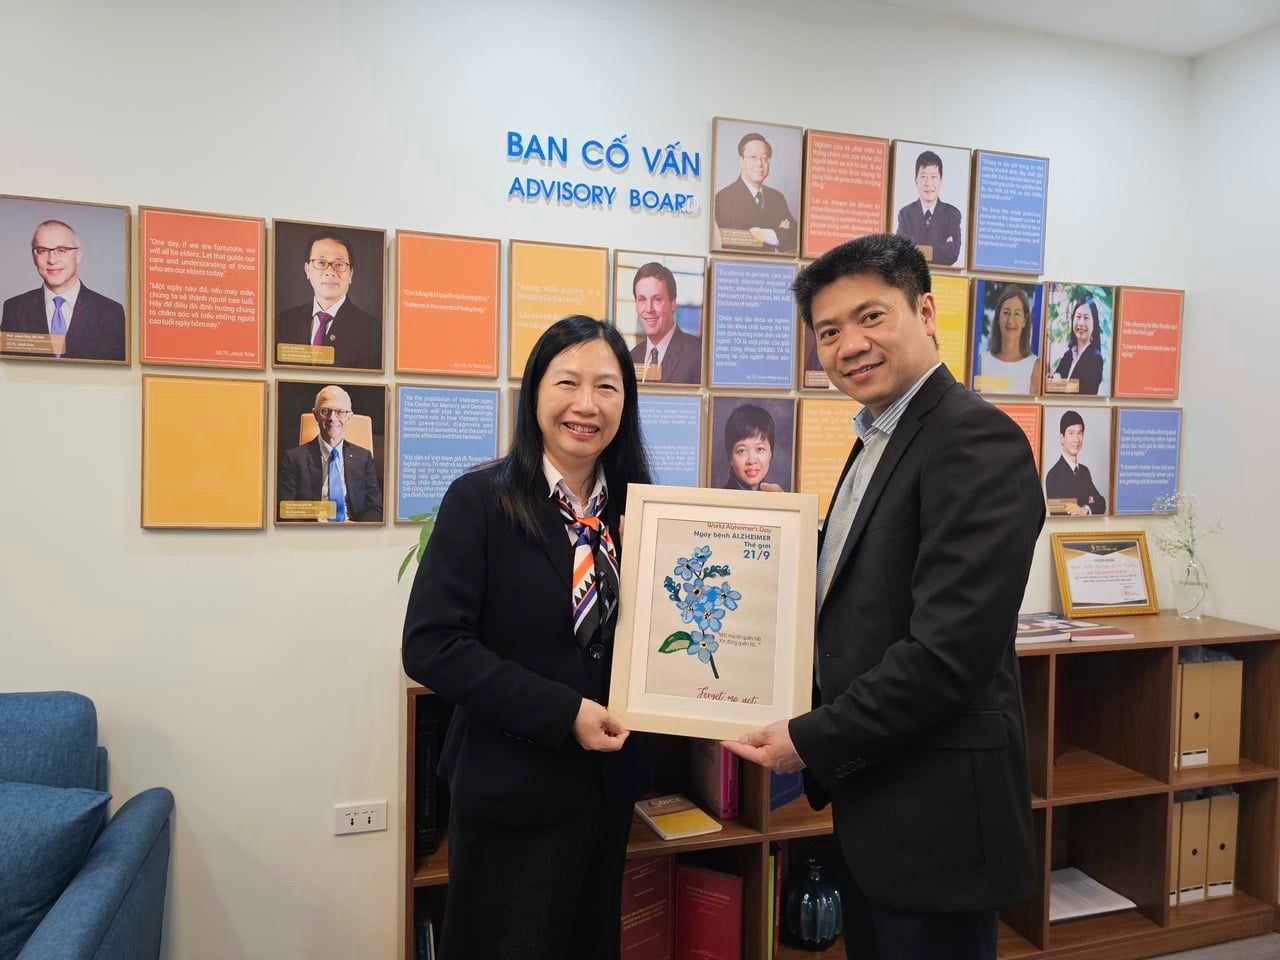 Hợp tác quốc tế nghiên cứu phòng chống sa sút trí tuệ ở Việt Nam: Những bước đi dài của ngành y tế Việt - ảnh 2